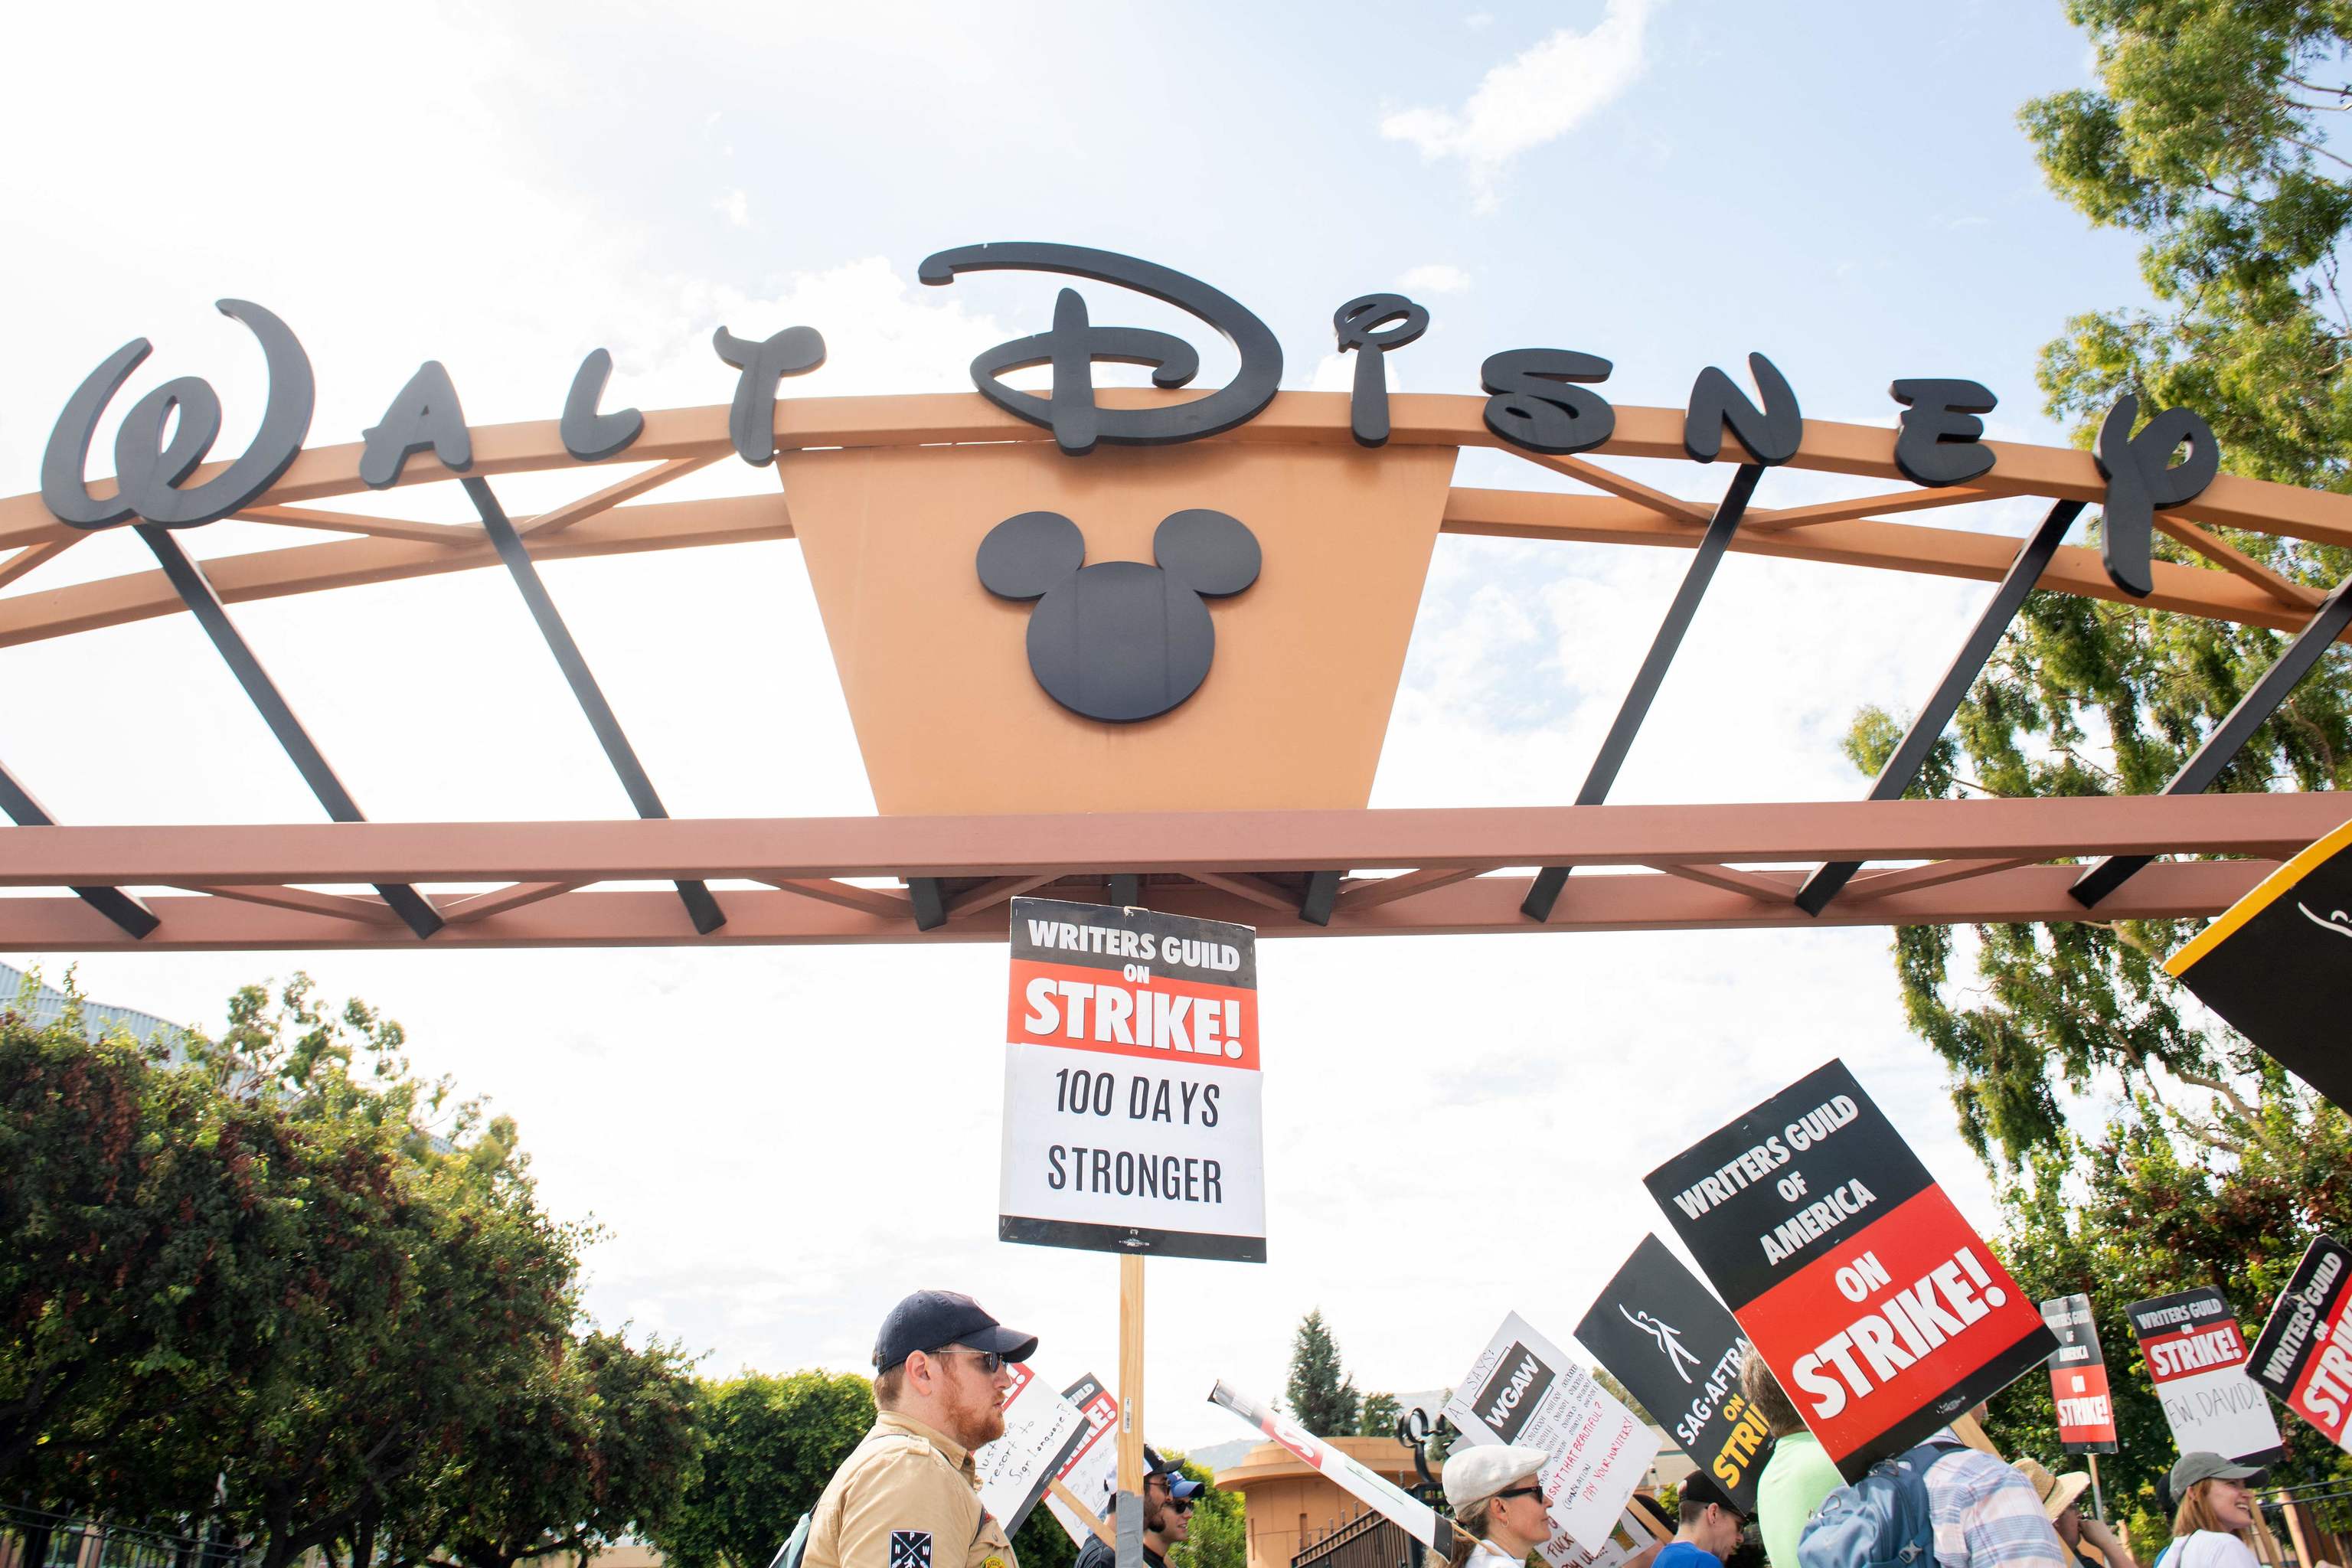 Los miembros del Sindicato de guionistas estadounidense protestan en la puerta de un estudio de Disney durante el da 100 de su huelga